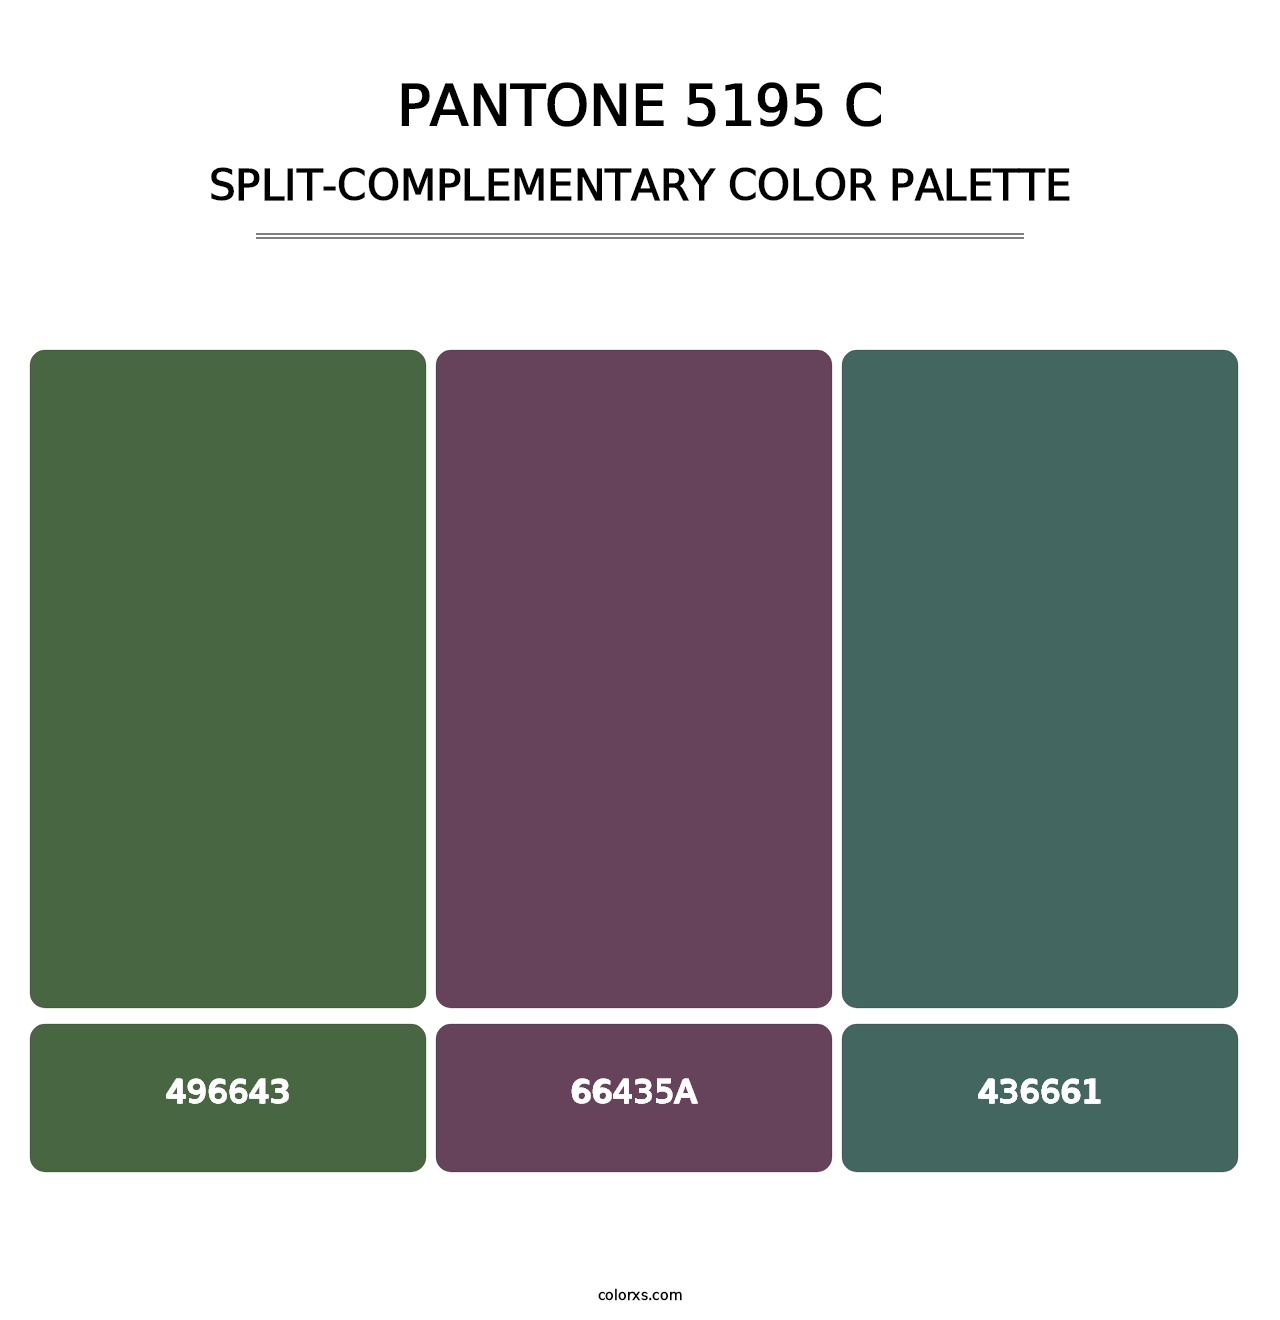 PANTONE 5195 C - Split-Complementary Color Palette